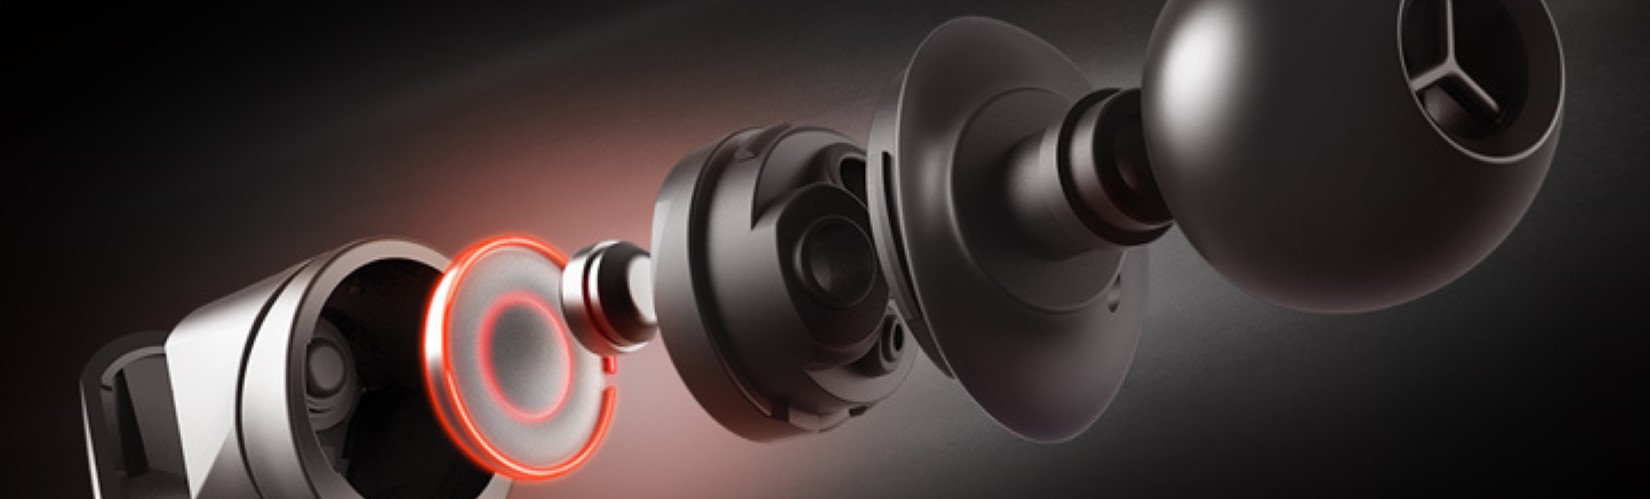 tai nghe Asus ROG Cetra Core trang bị Driver Asus Essence độc quyền 10mm